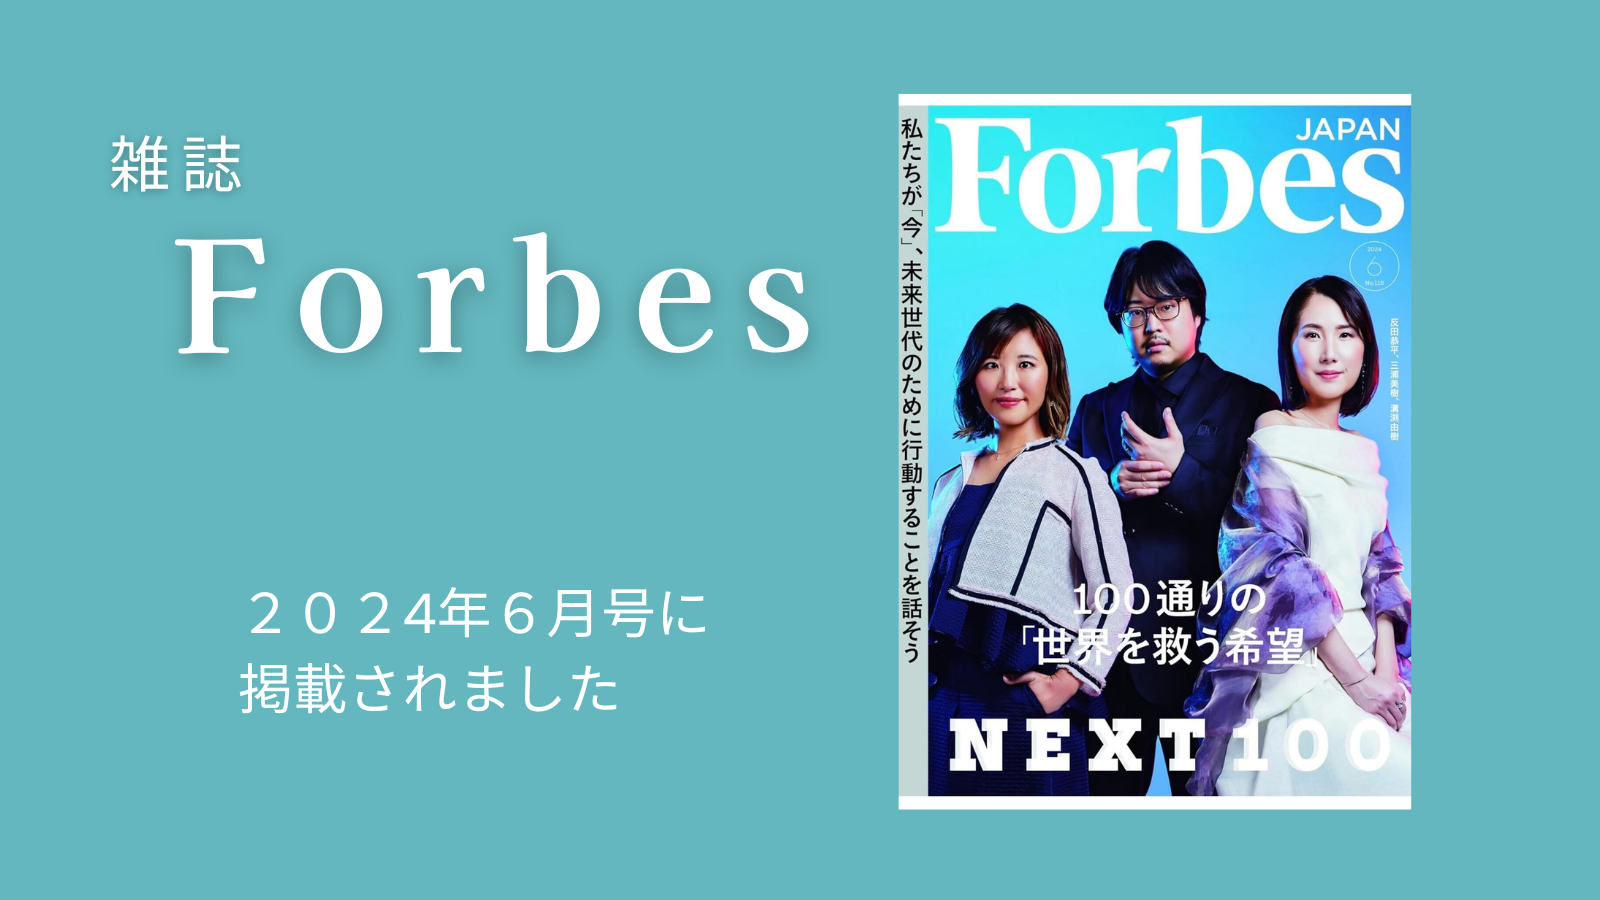 ビジネス雑誌「Forbes JAPAN」に代表三浦美樹が掲載されました